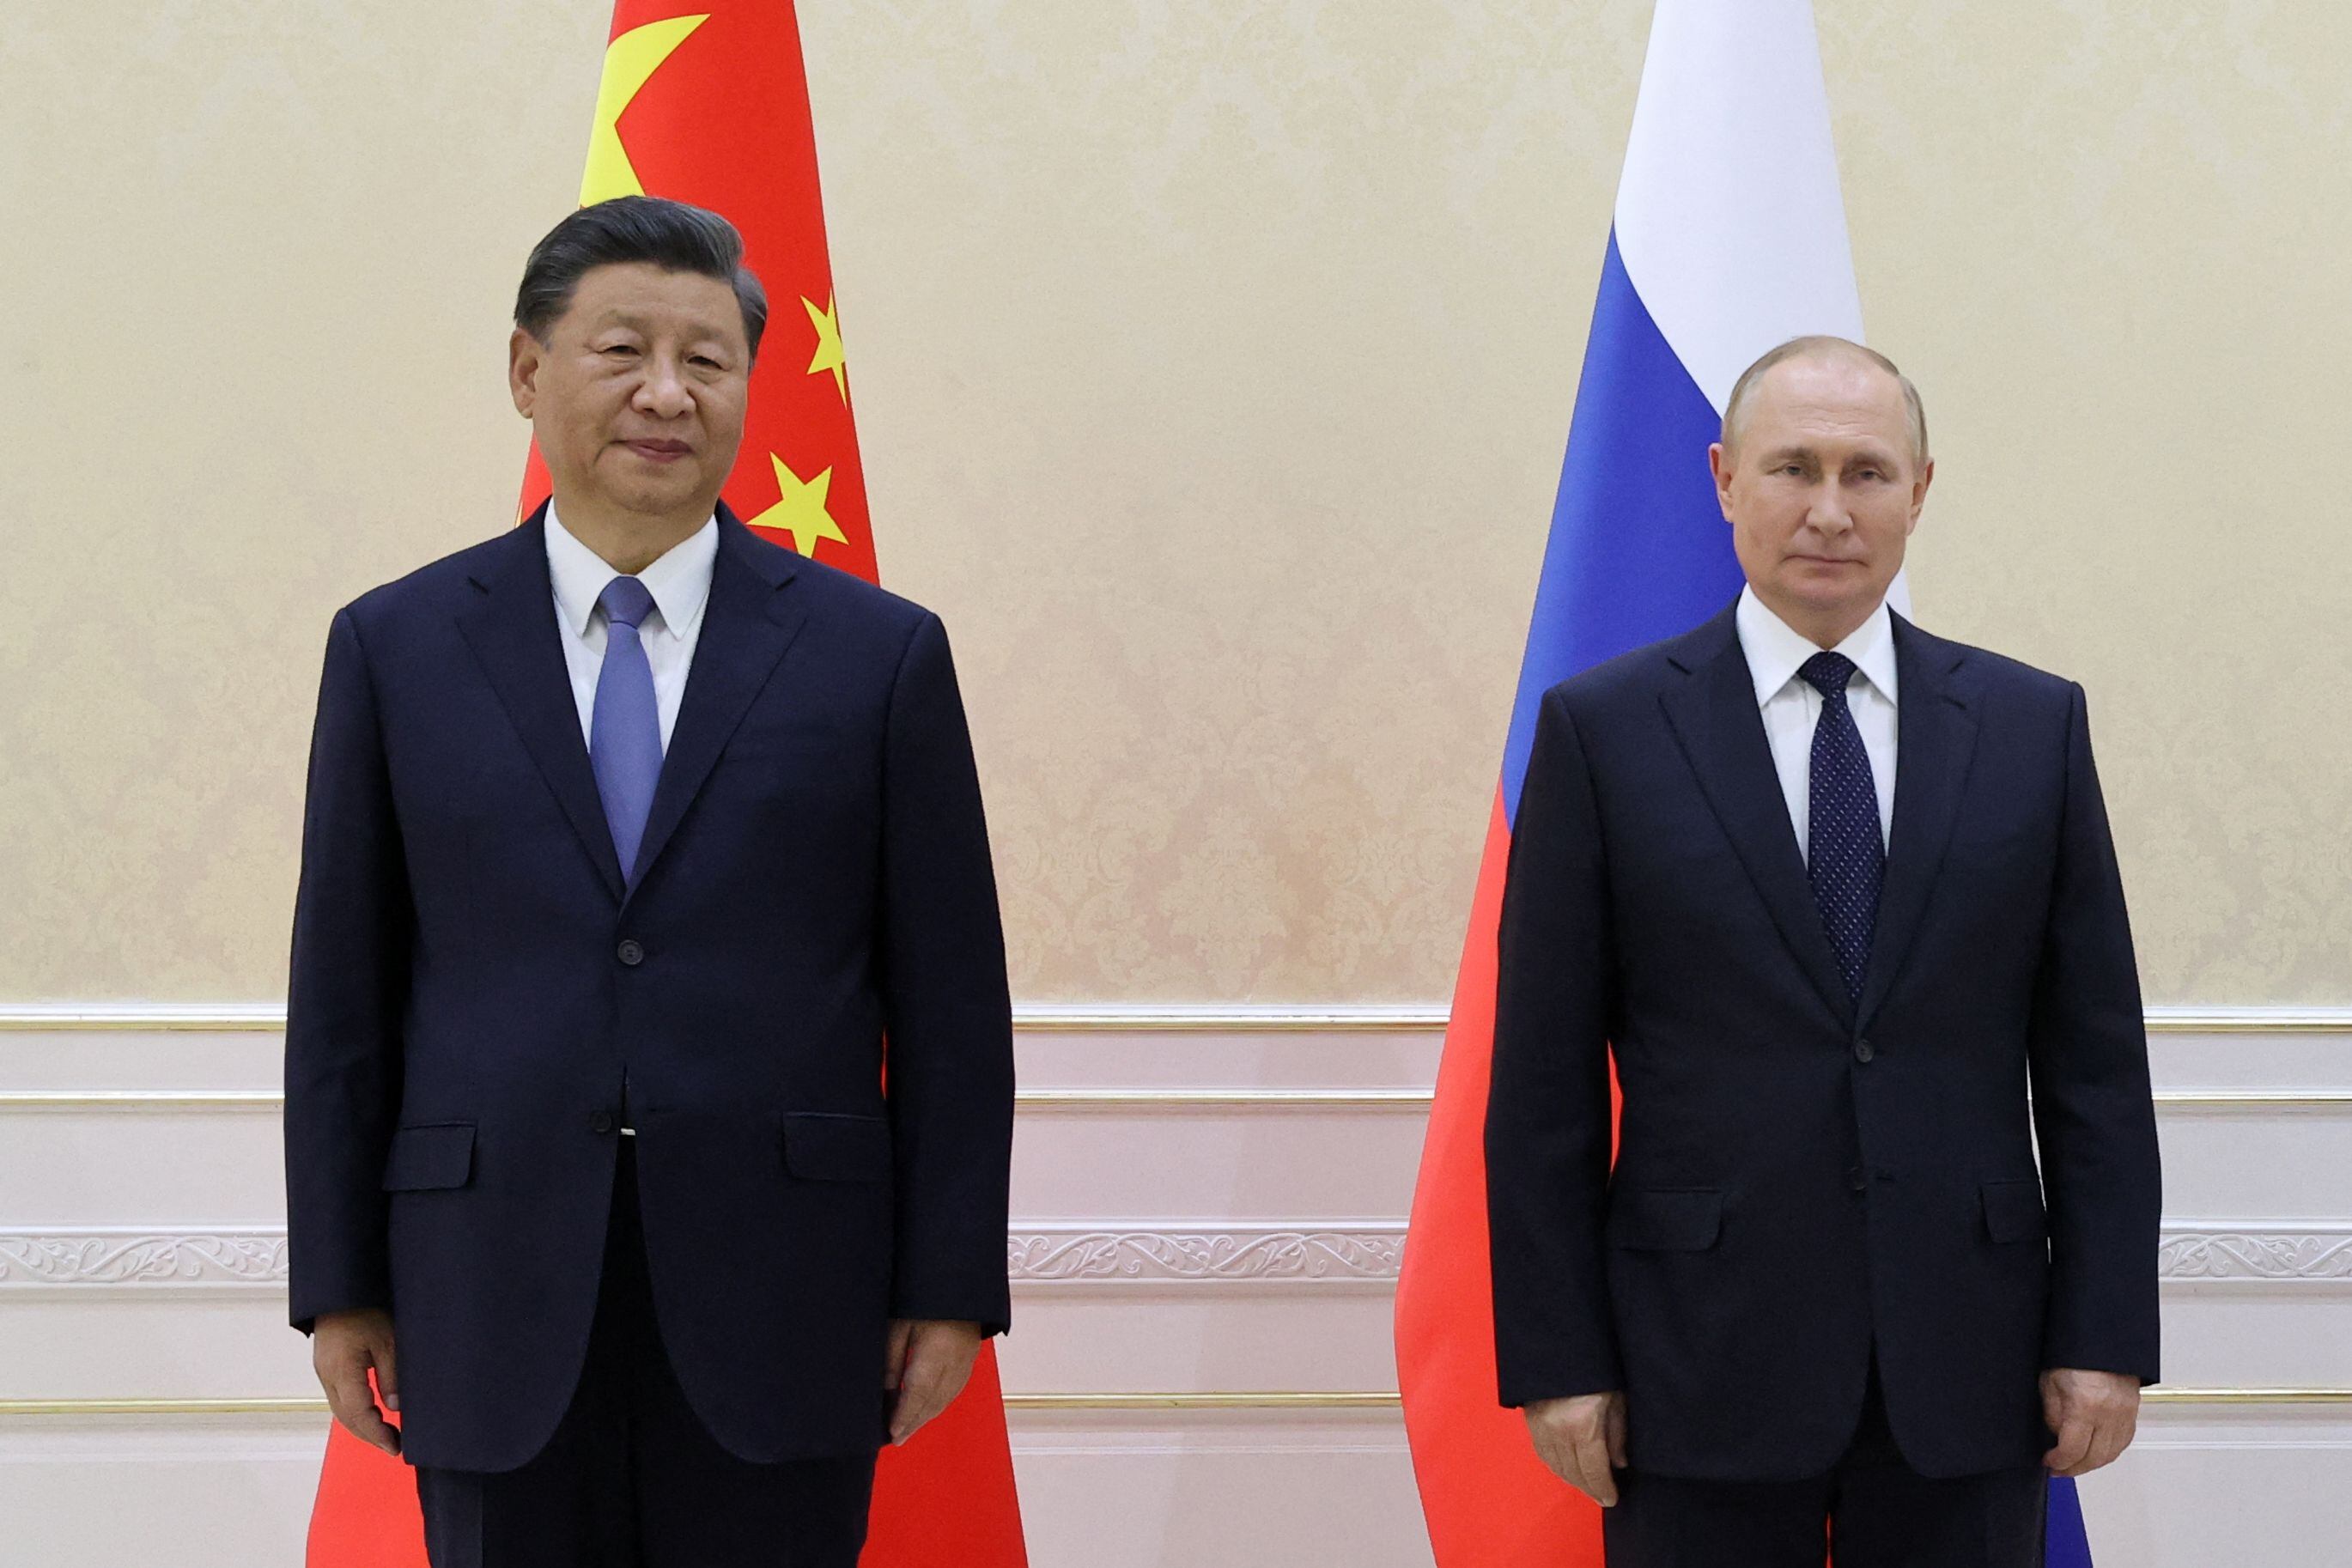 Ambos presidentes se felicitaron de sus relaciones como grandes potencias como un contrapeso a Occidente.